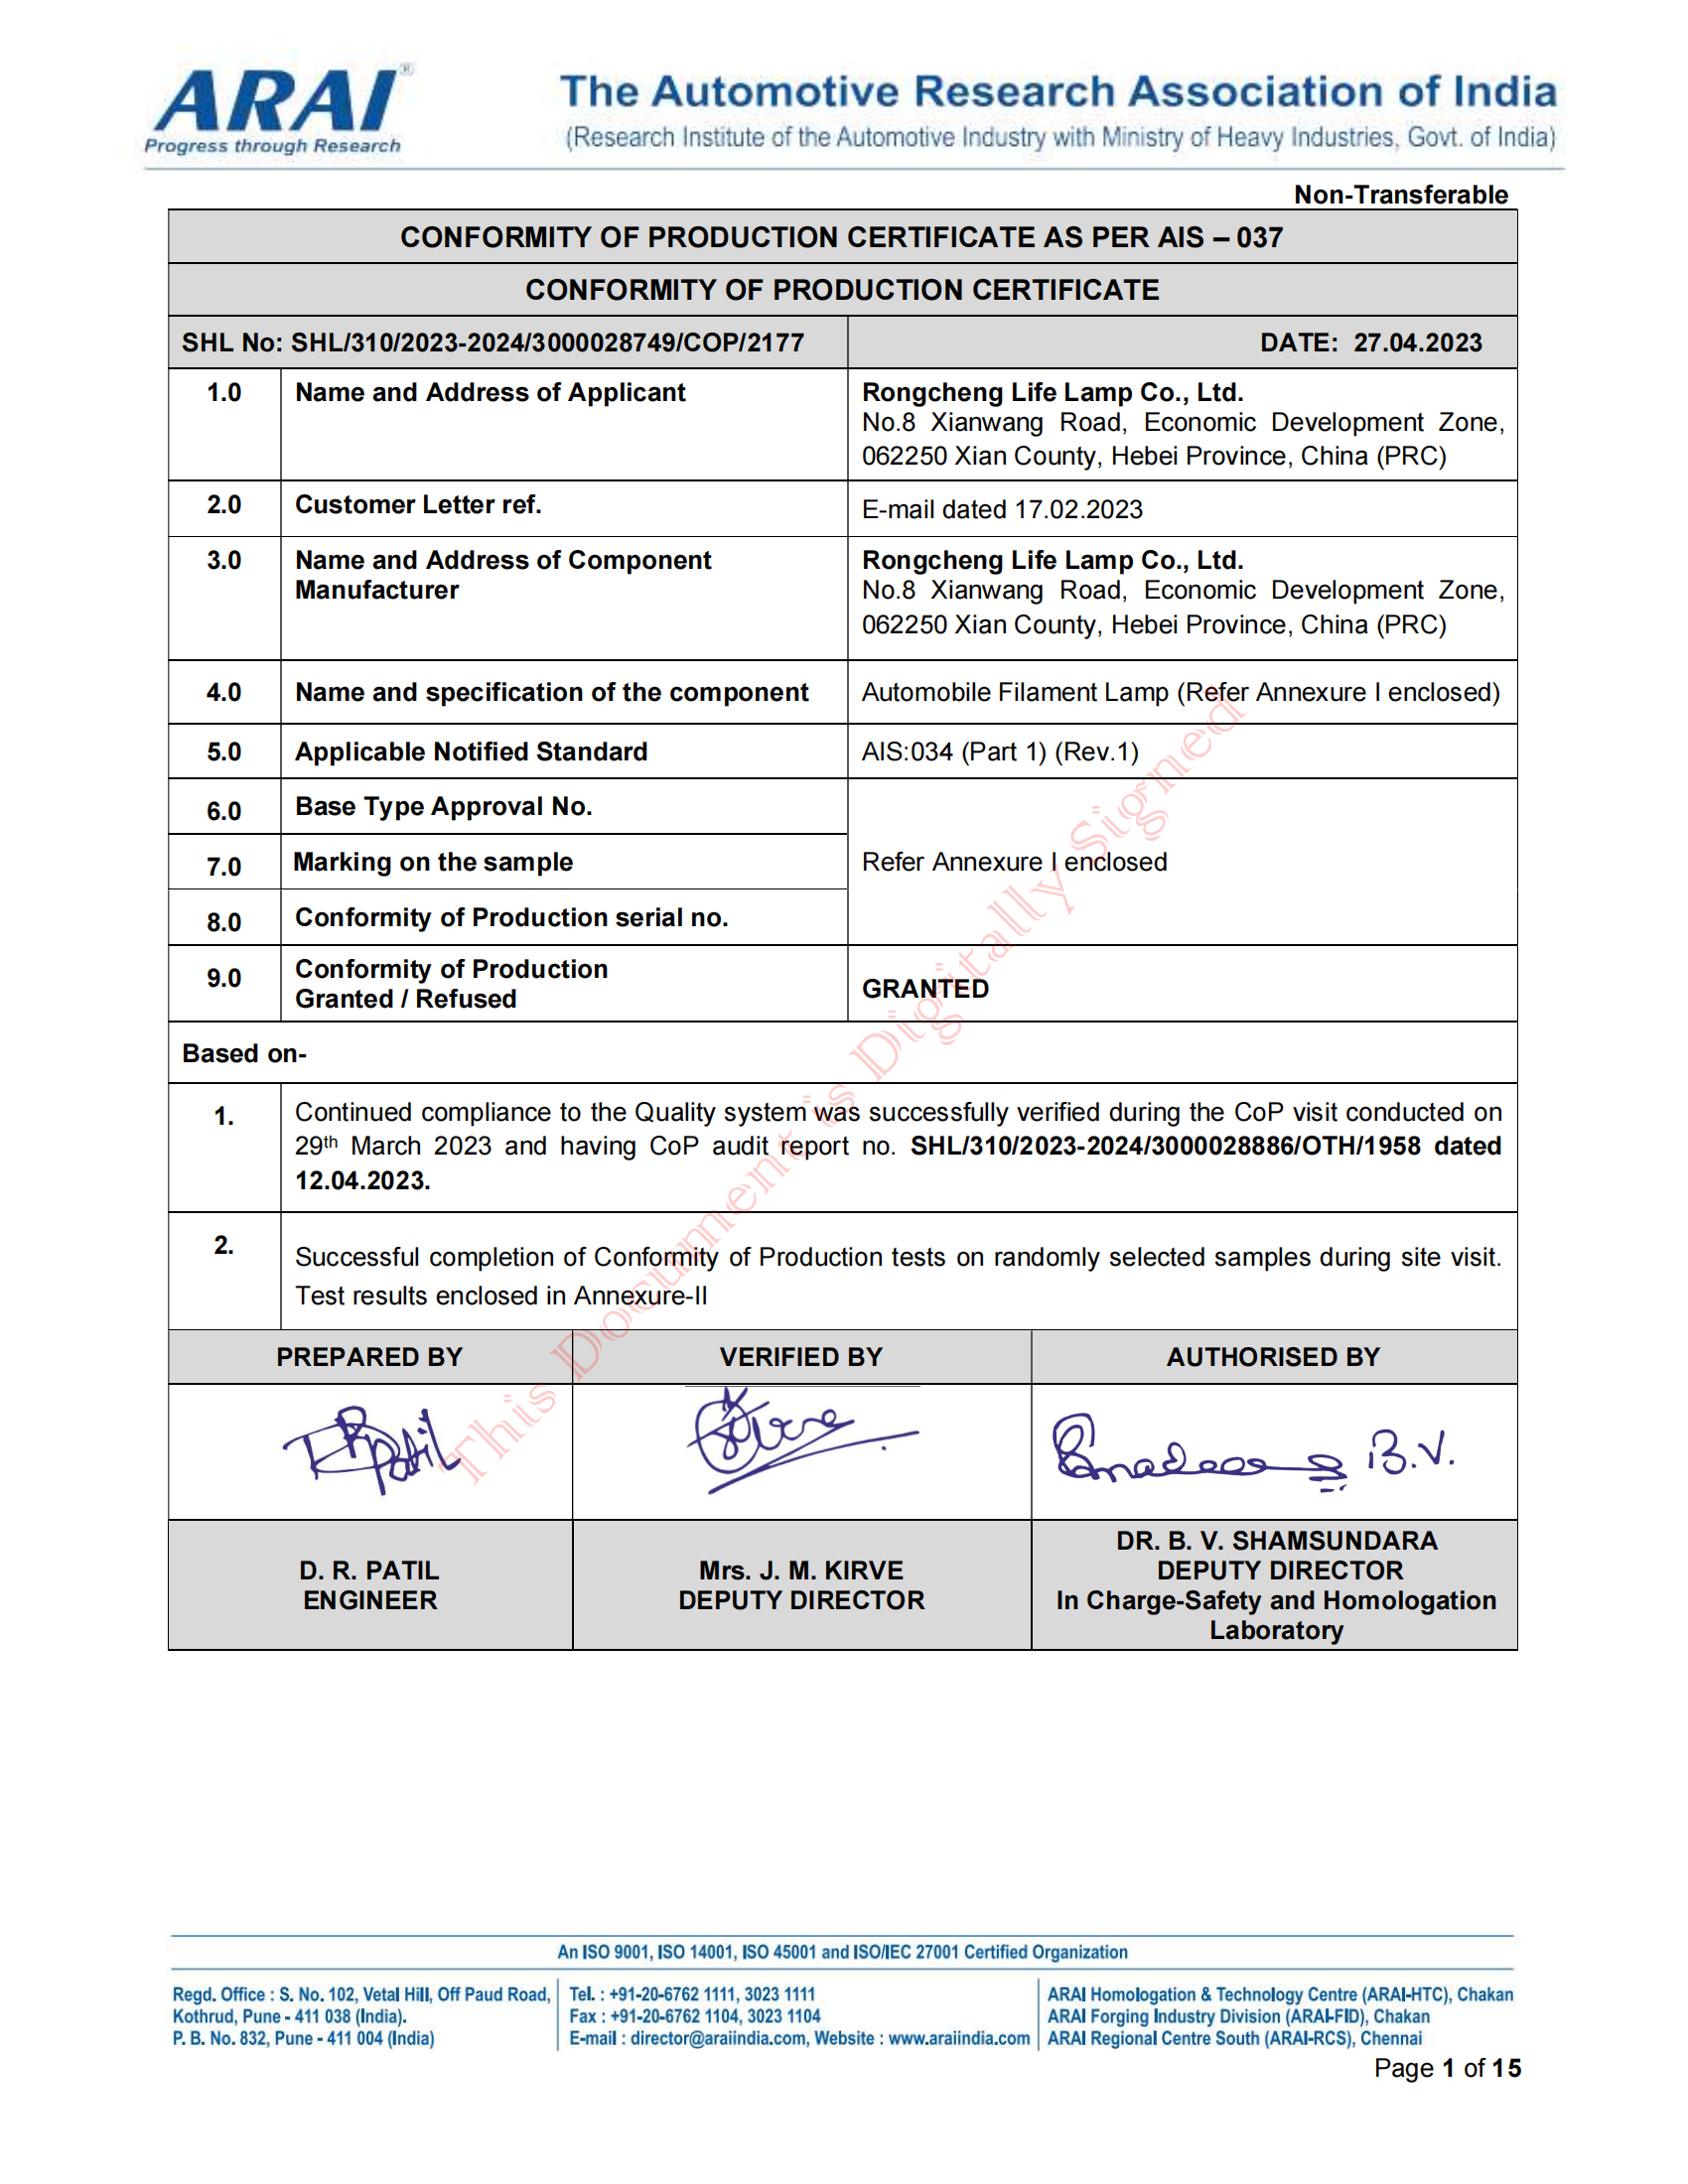 印度ARAI COP证书